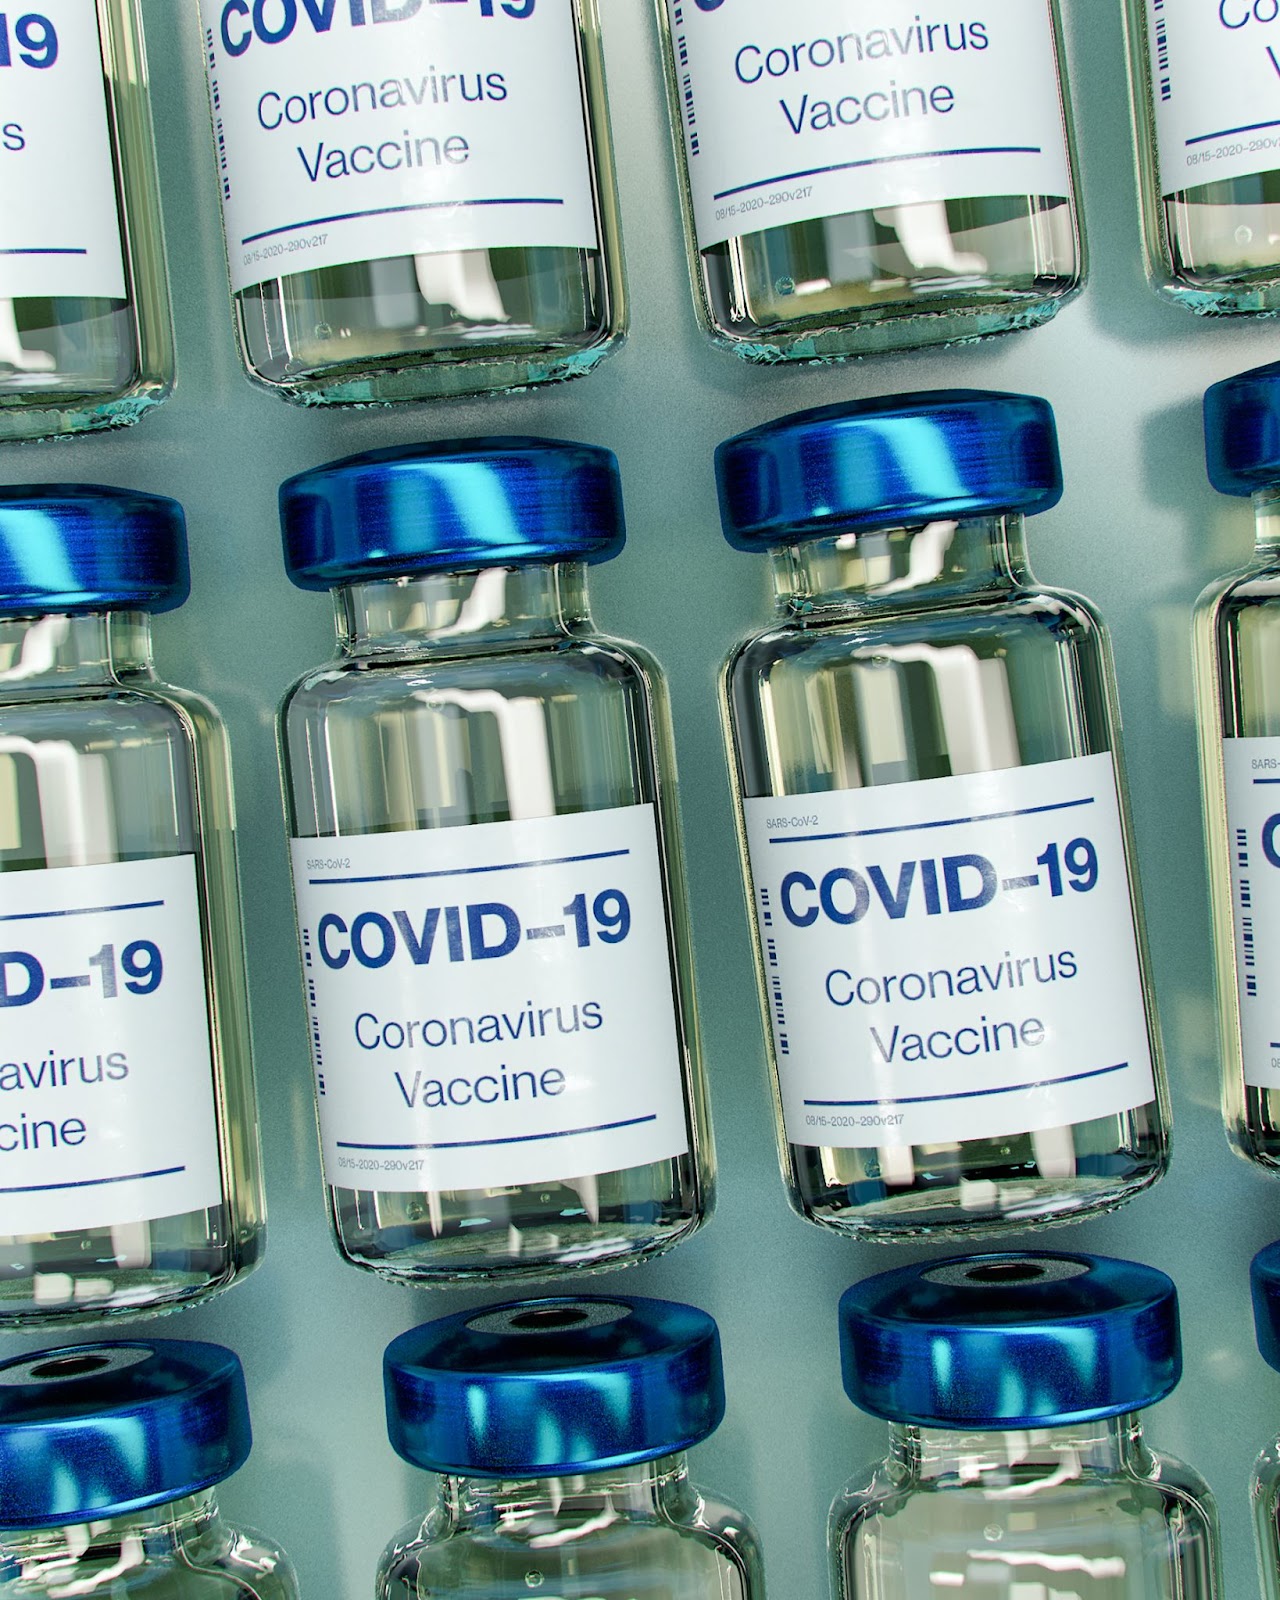 COVID-19 Coronavirus vaccine vials